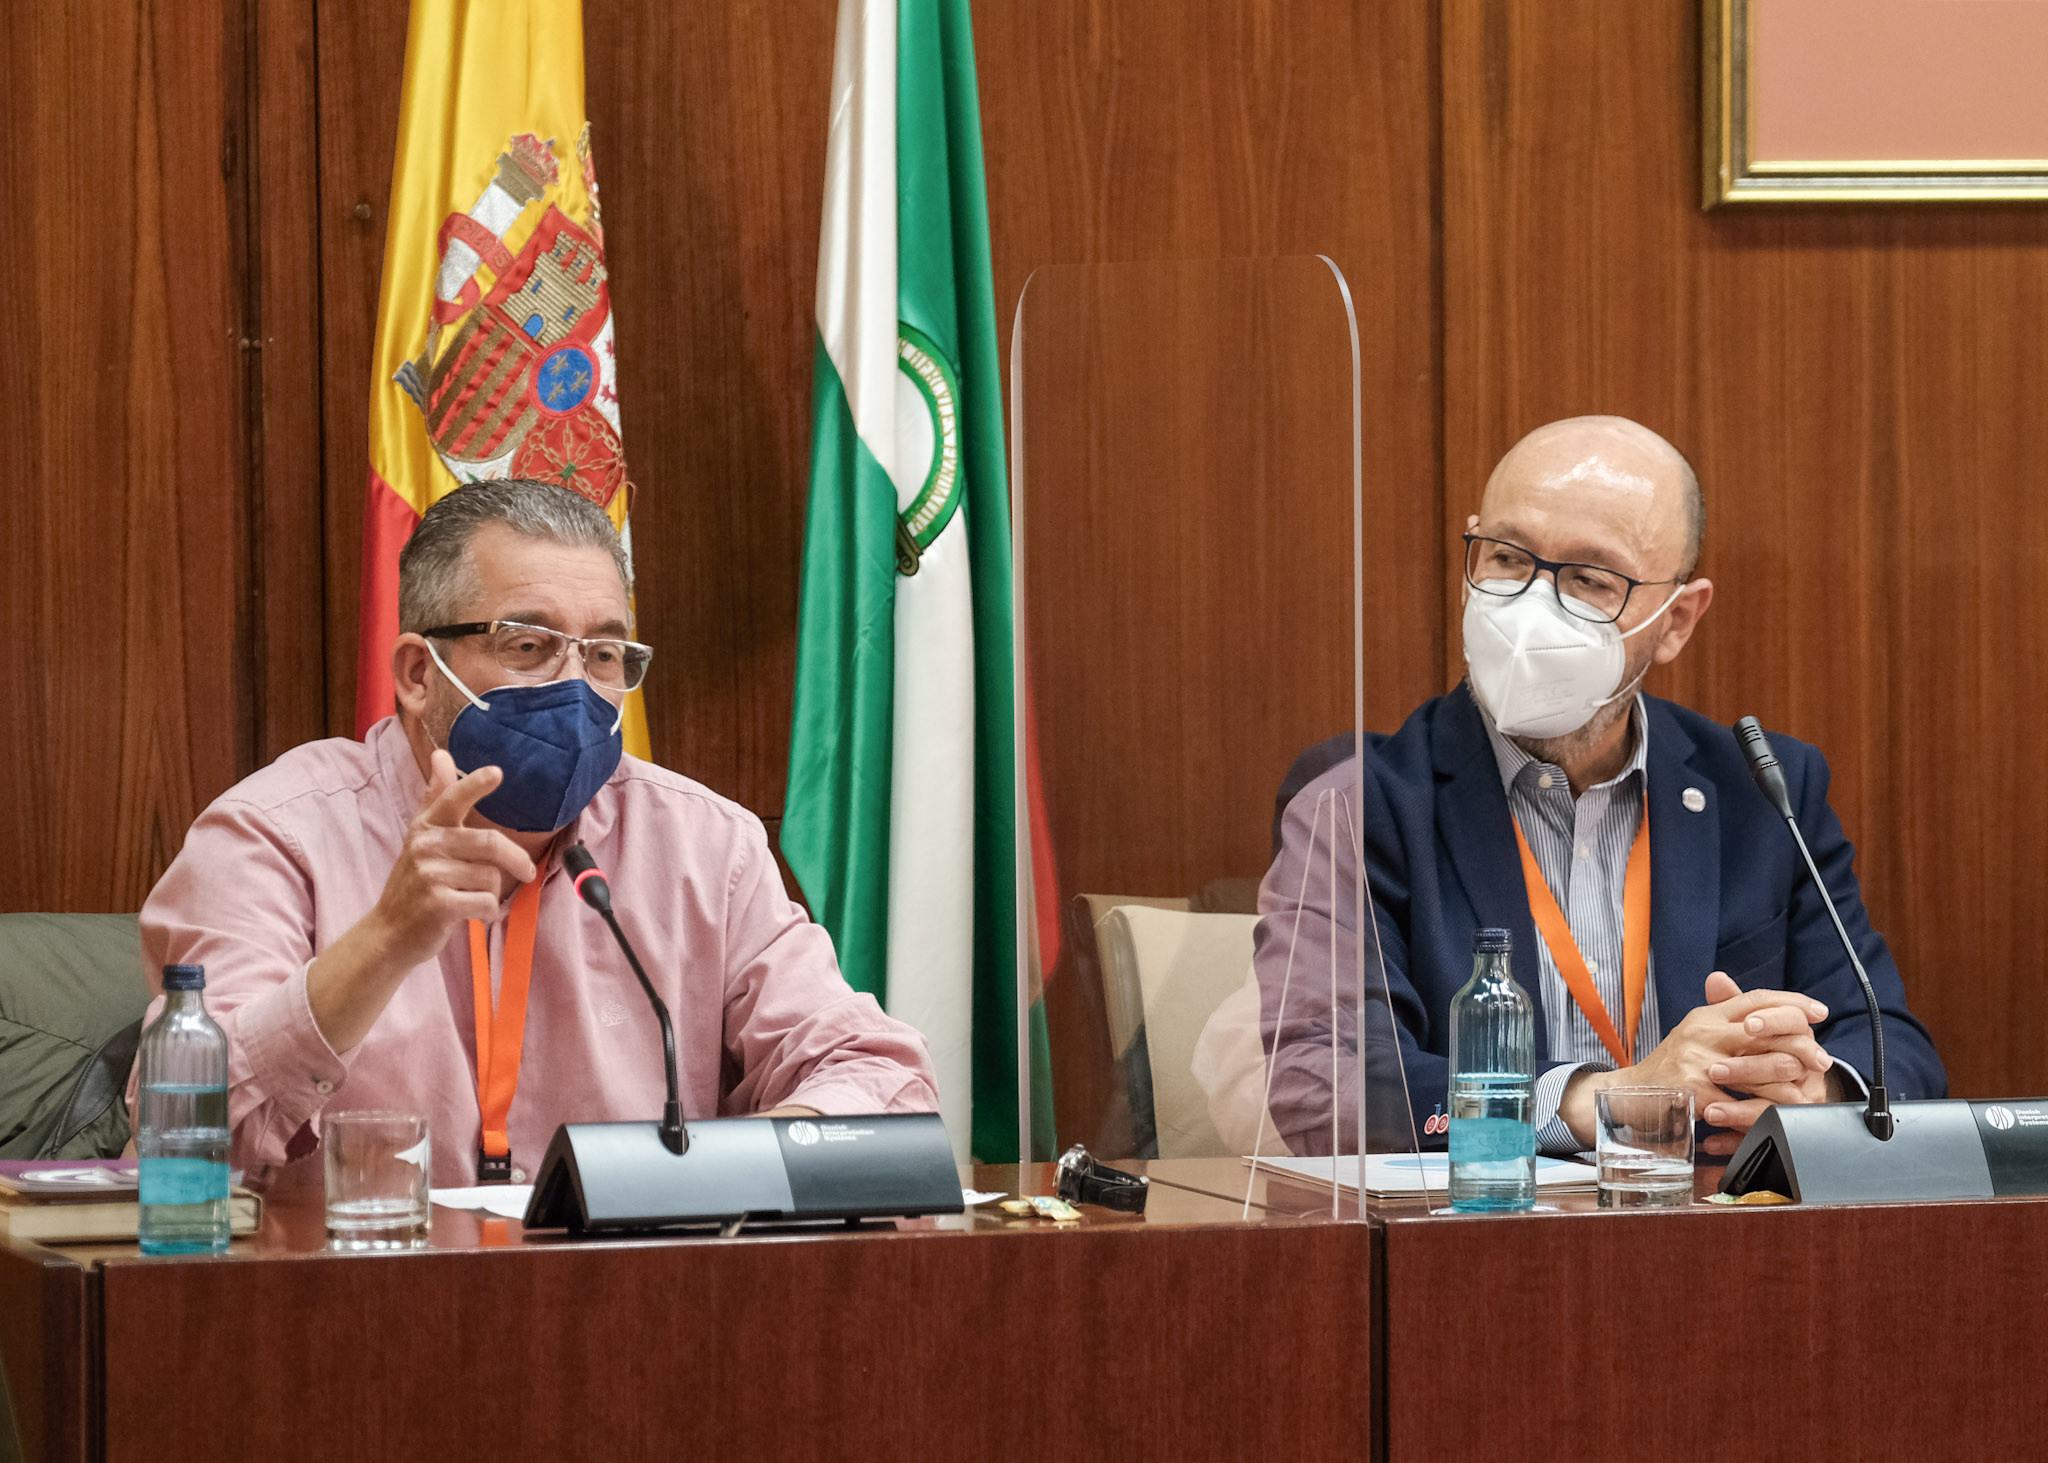   En representacin de la Asociacin de Enfermos de Crohn y Colitis Ulcerosa (ACCU-Sevilla), han comparecido su presidente, Jos Luis Rodrguez, y Rafael Casado